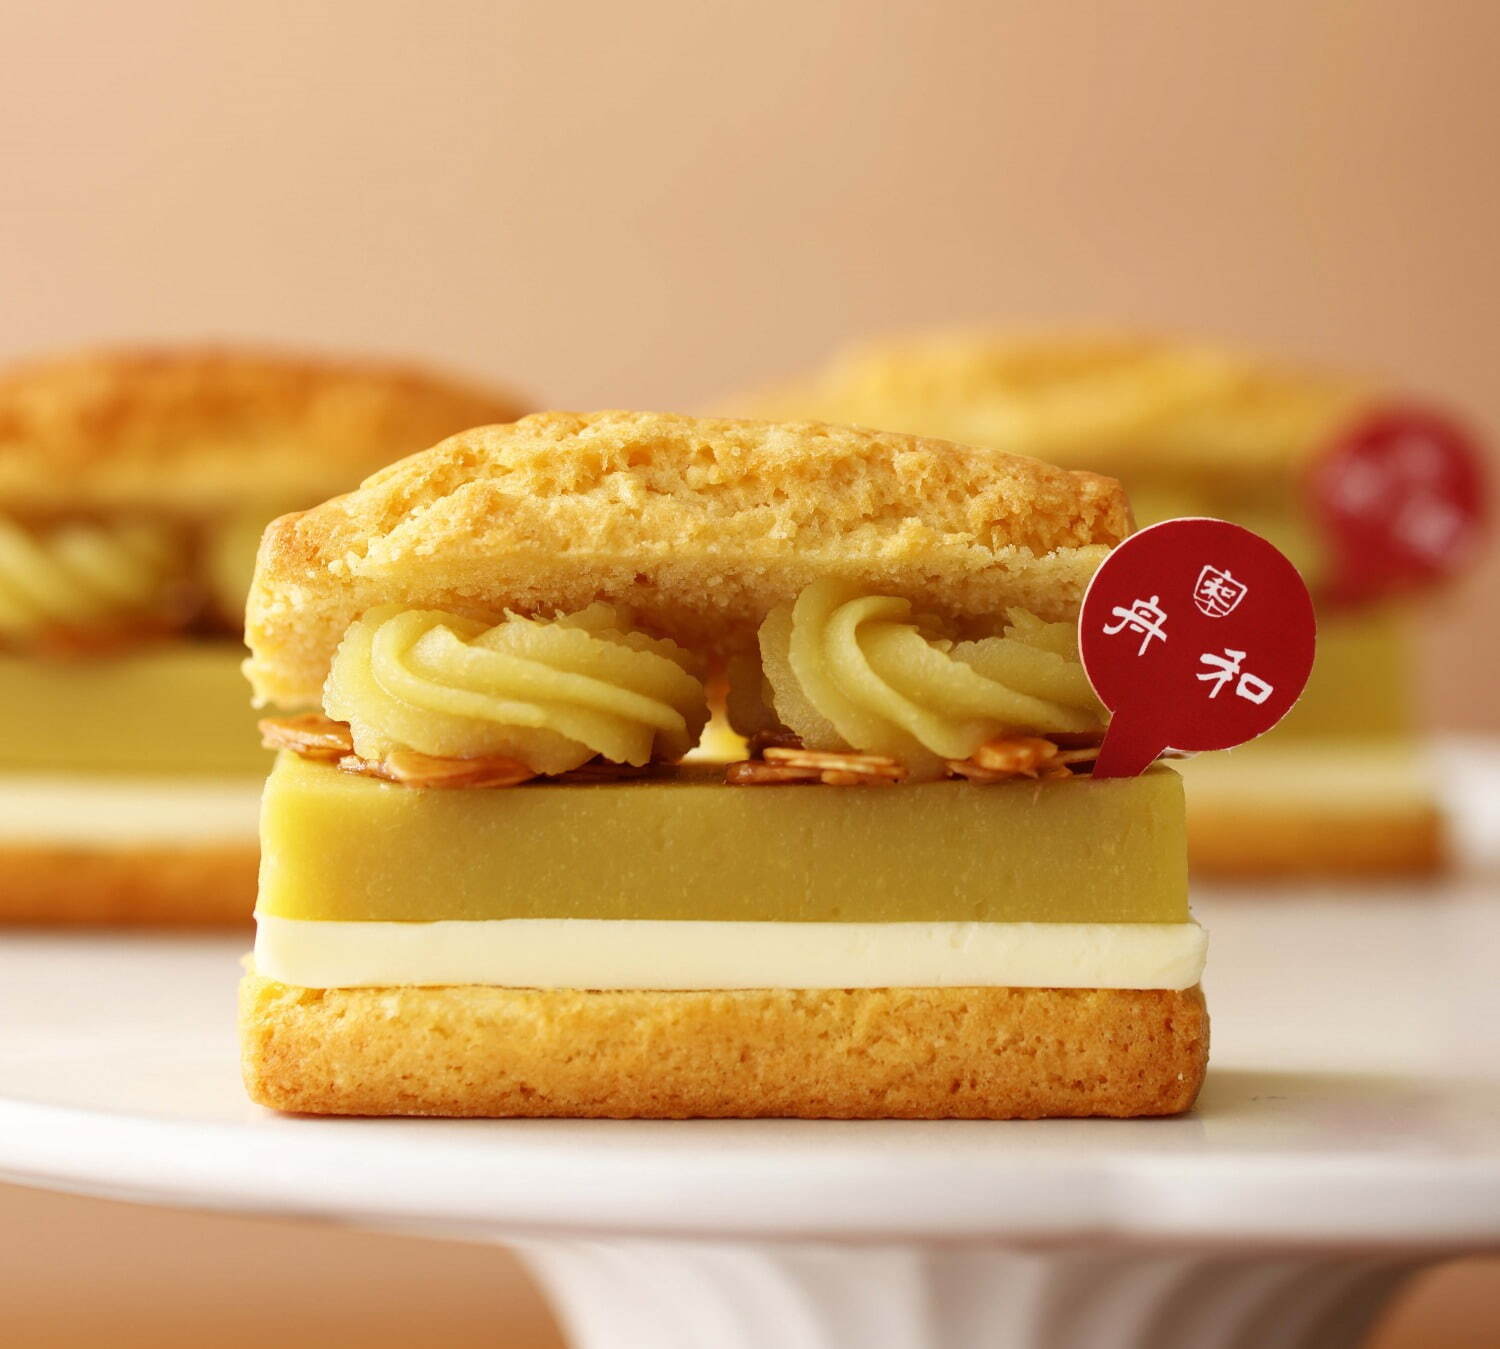 「『舟和』の芋ようかんと発酵バターのスコーンサンド」490円